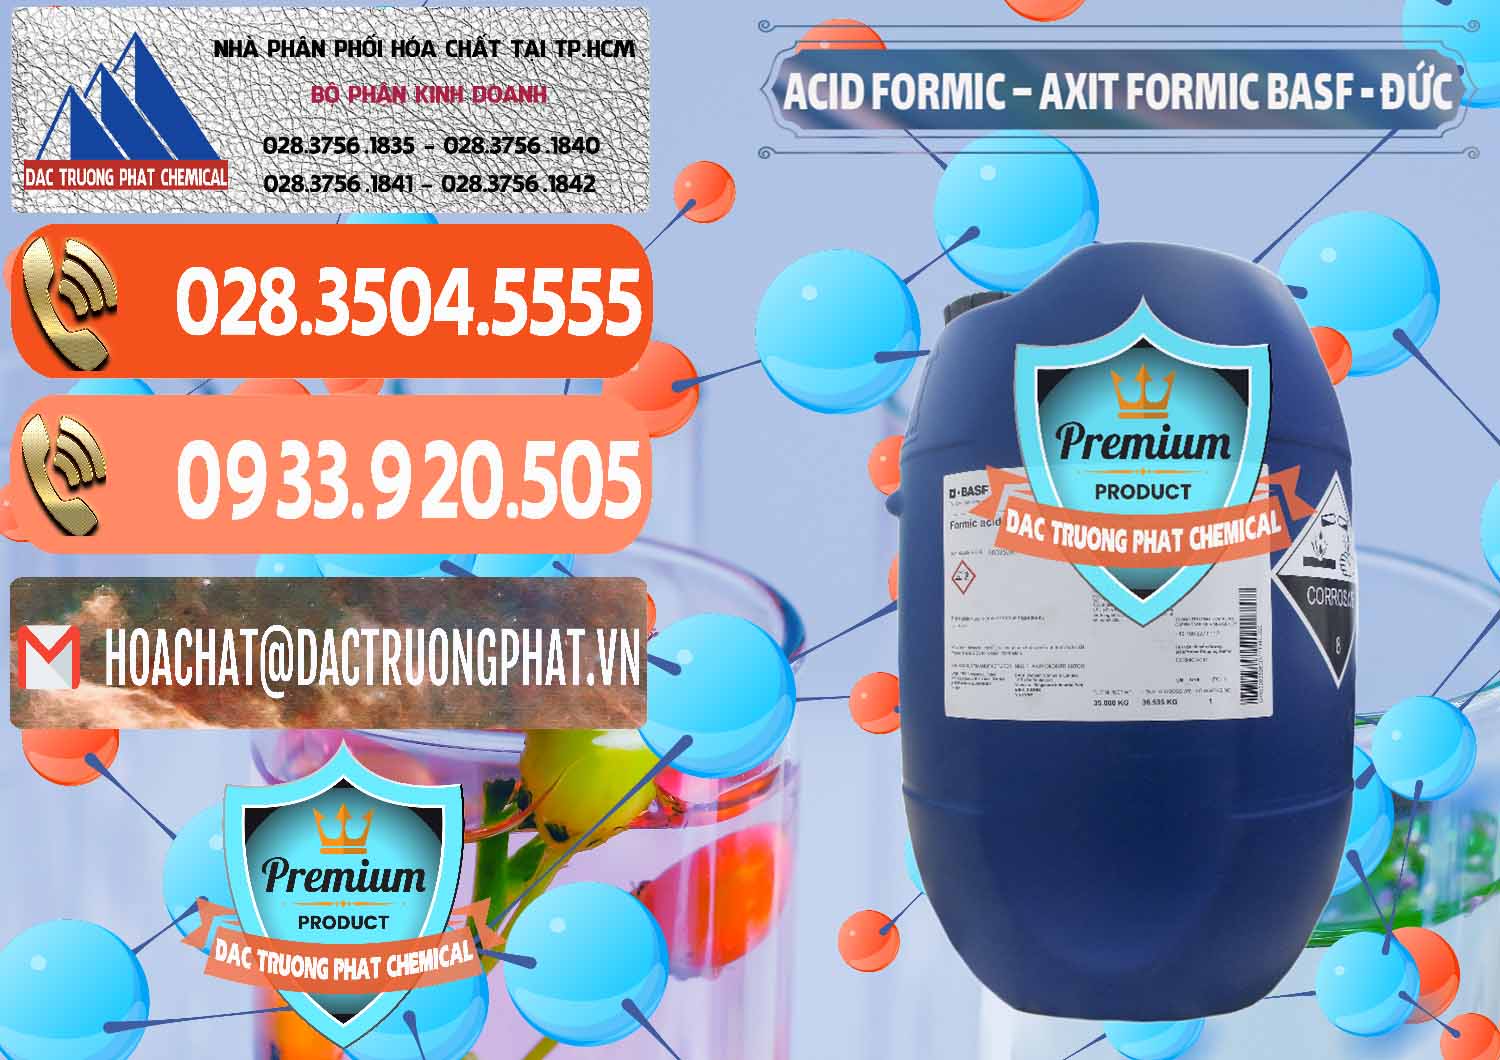 Phân phối và bán Acid Formic - Axit Formic BASF Đức Germany - 0028 - Công ty cung ứng ( phân phối ) hóa chất tại TP.HCM - hoachatmientay.com